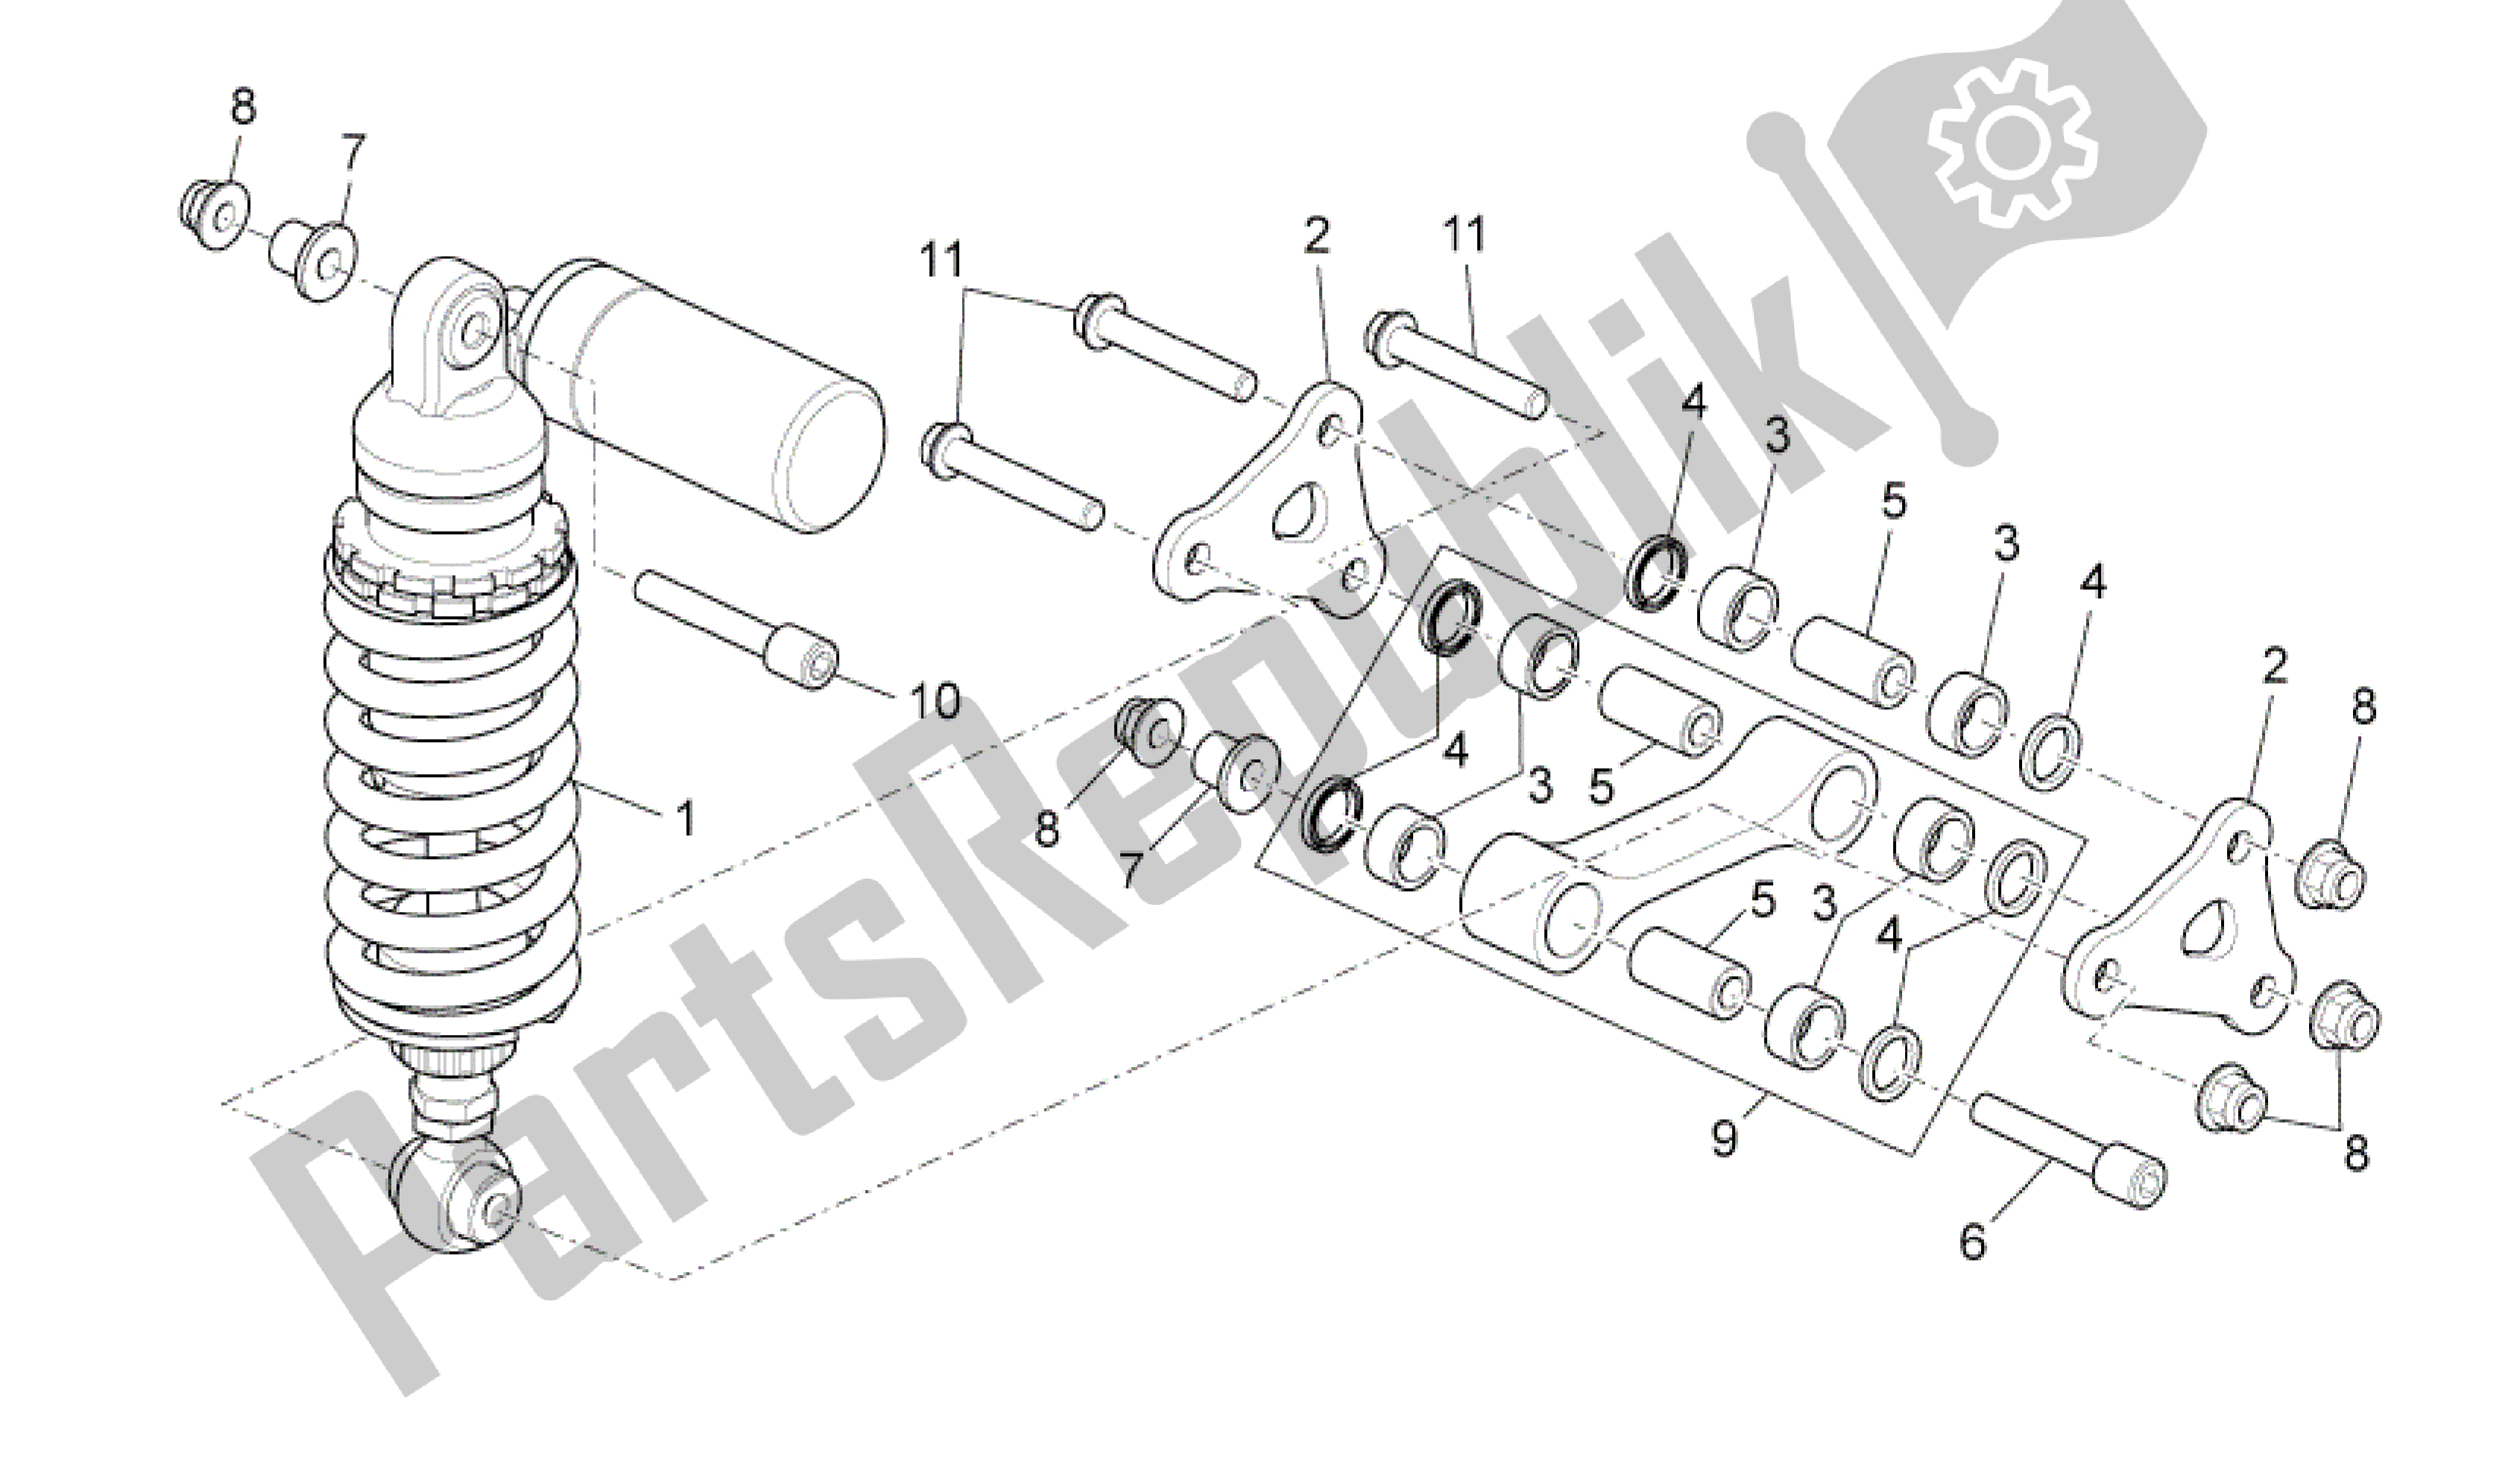 All parts for the Tras. Amortiguador of the Aprilia RSV4 Tuono V4 R Aprc 1000 2011